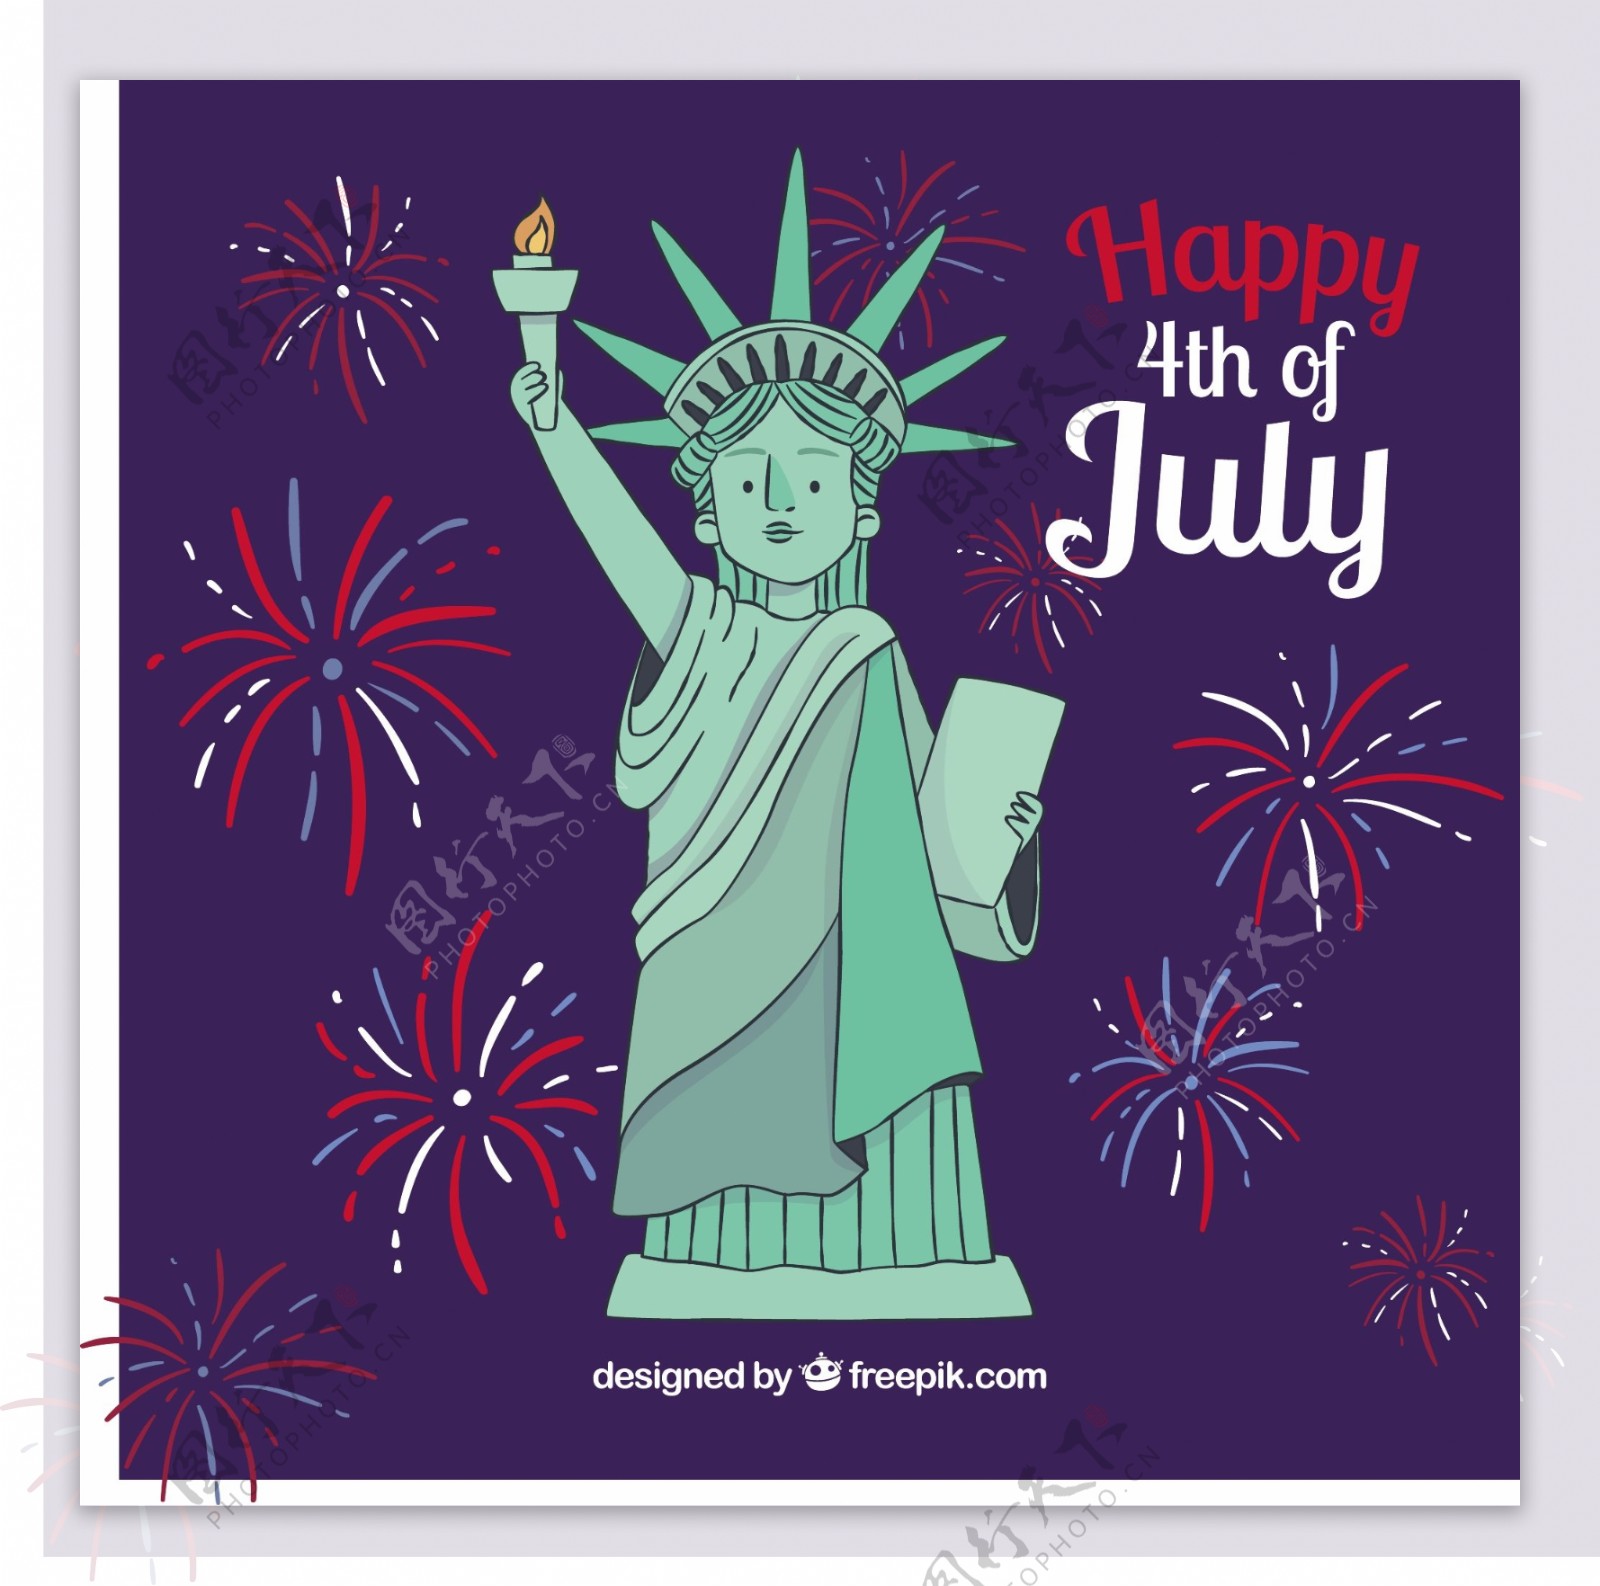 烟花和自由女神雕像美国独立日背景